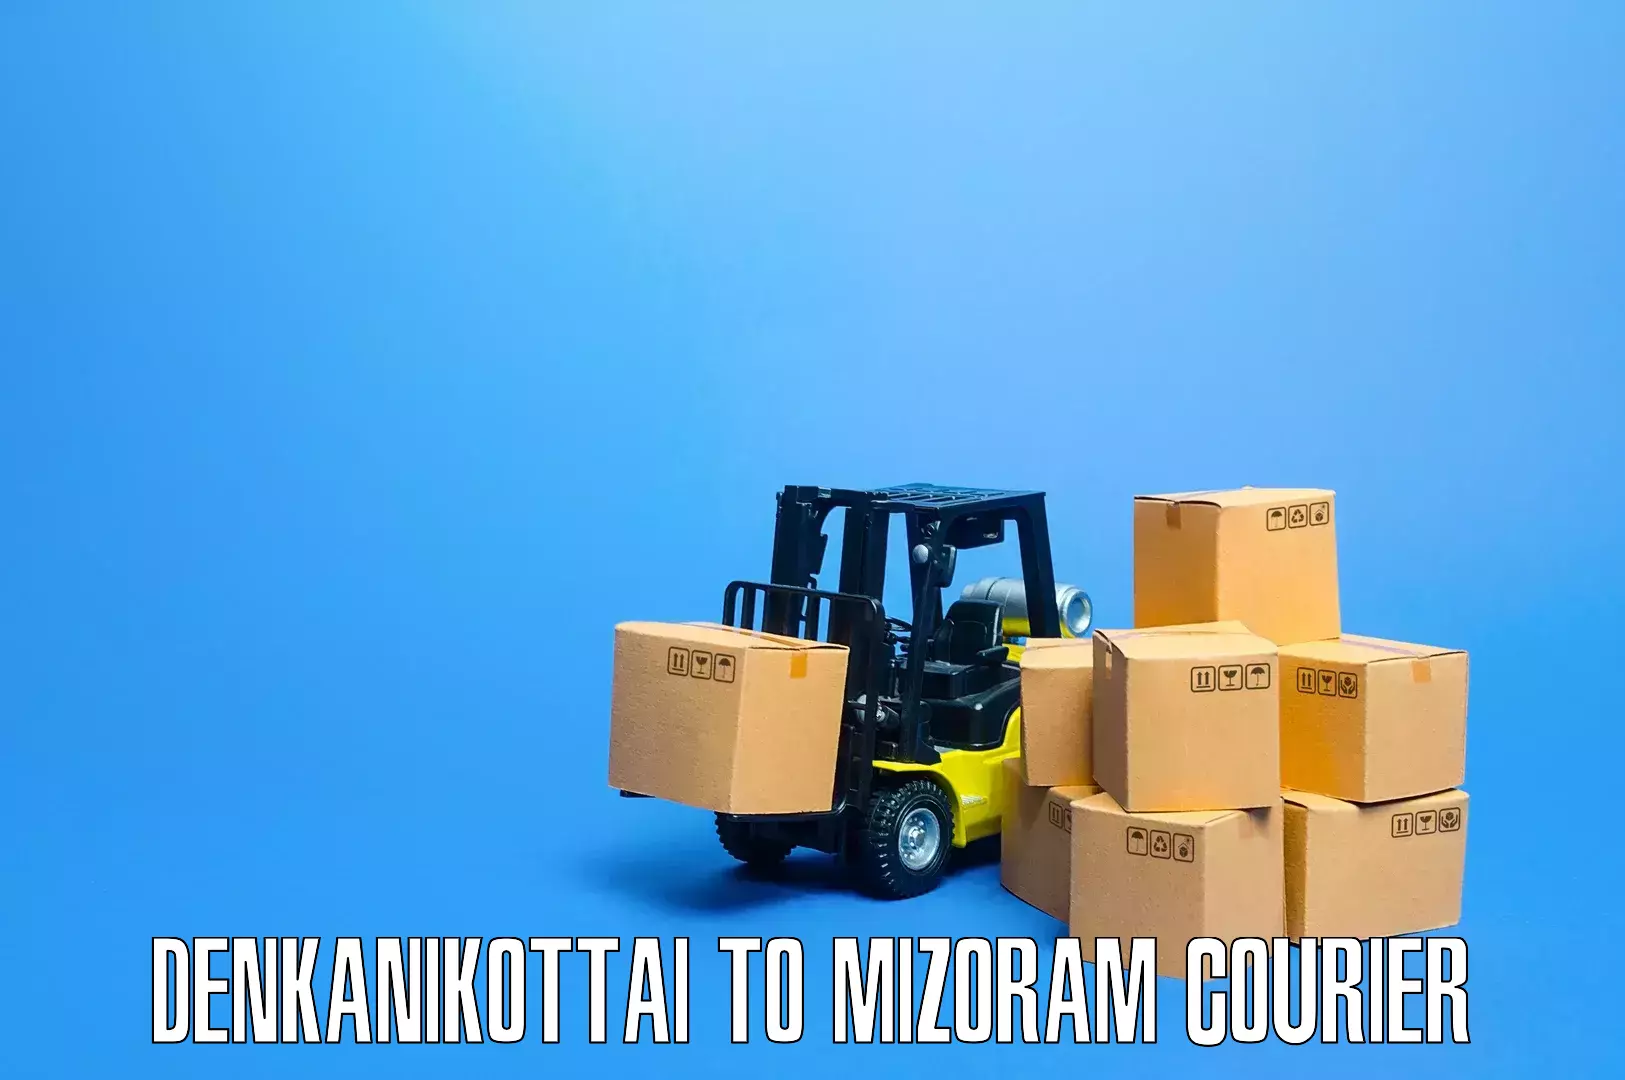 Household goods transport service Denkanikottai to Saitual